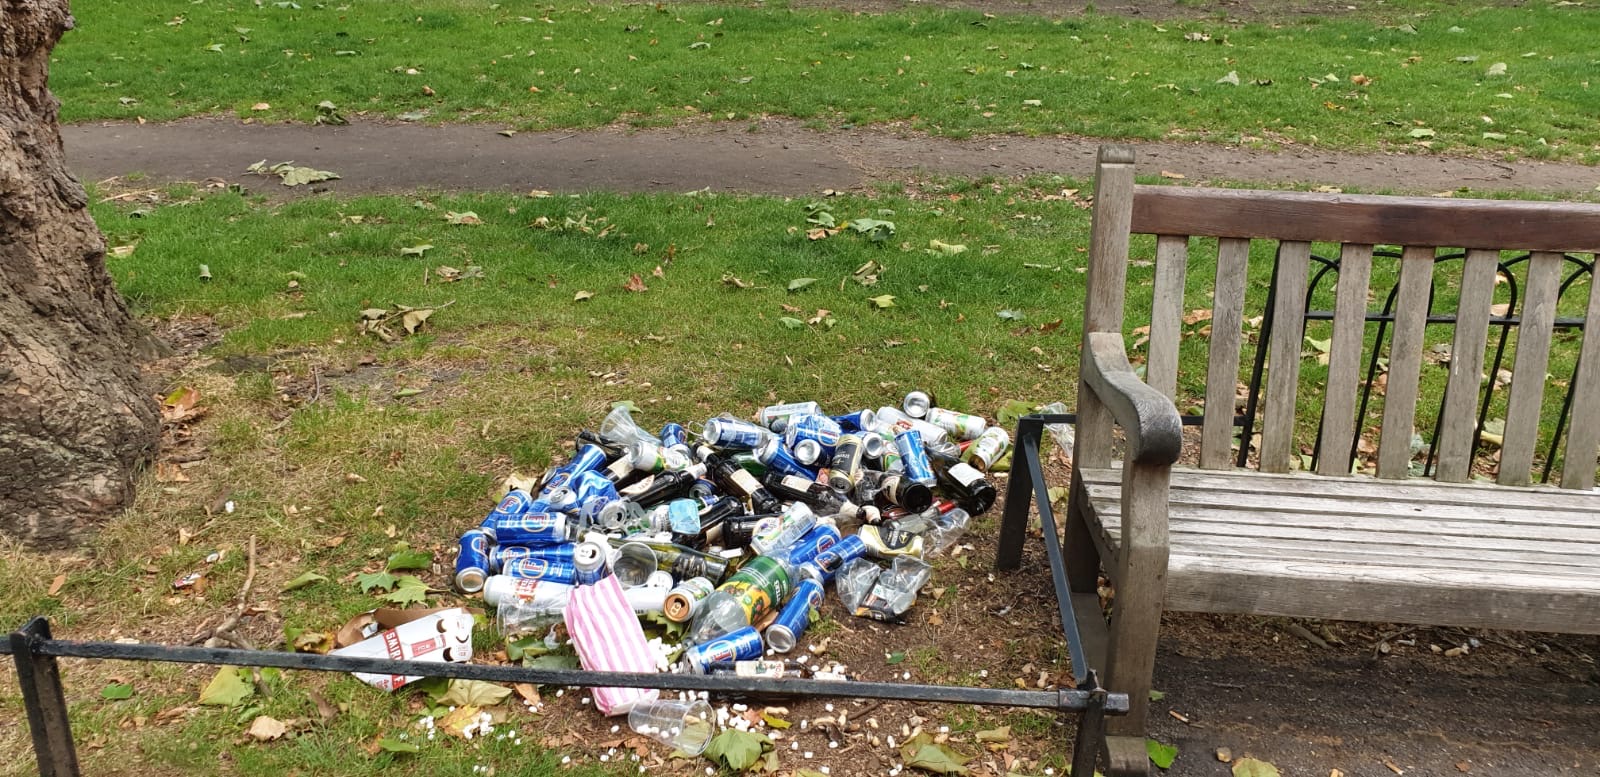 Litter left in St James' Park, central London